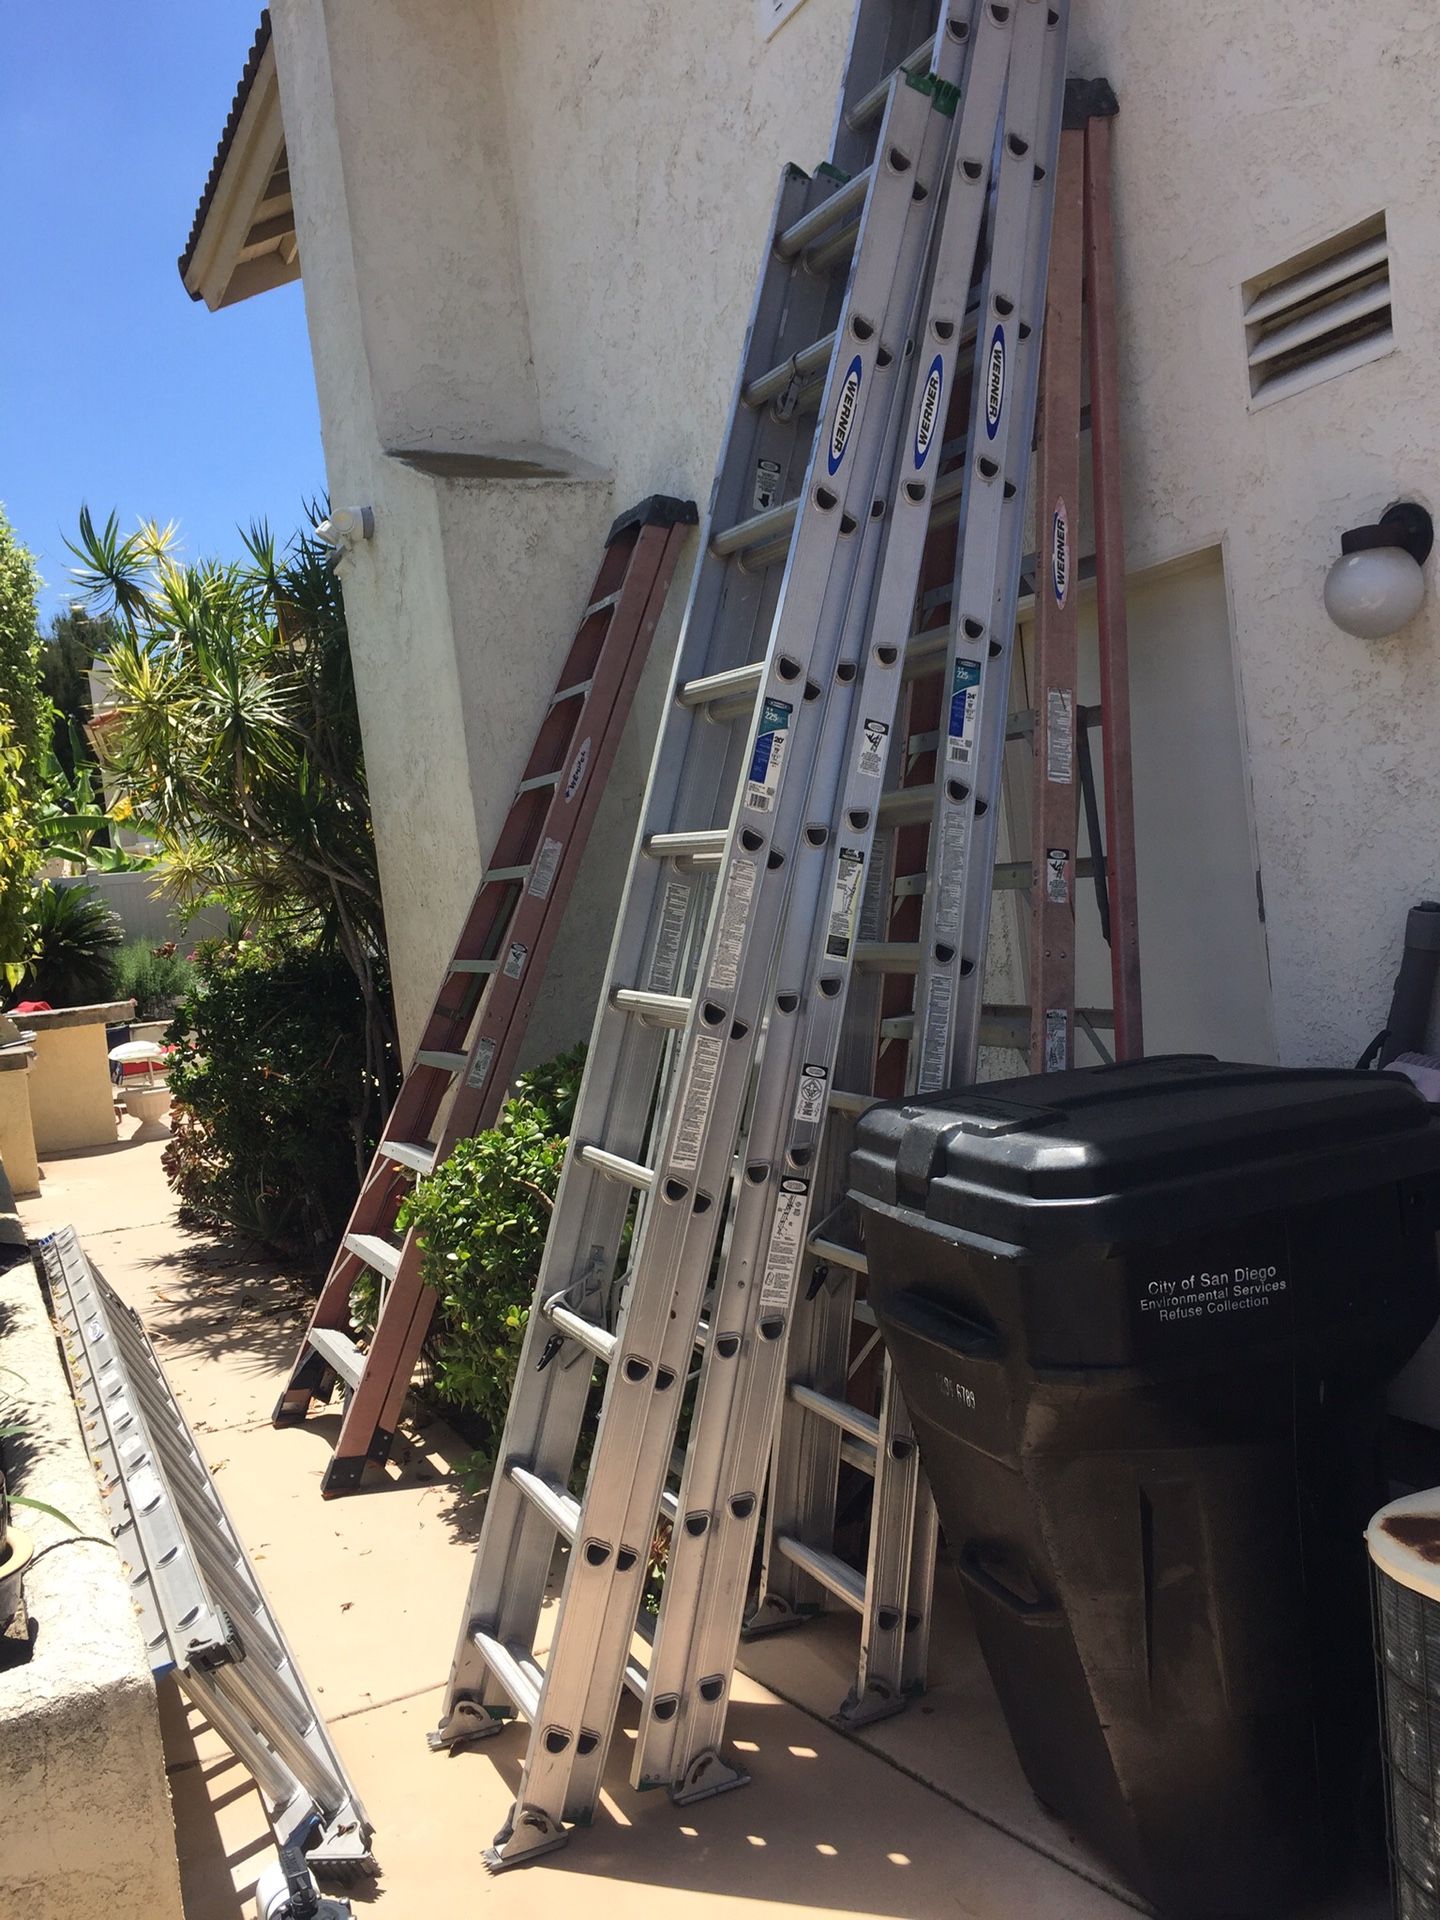 24 ft extension ladder